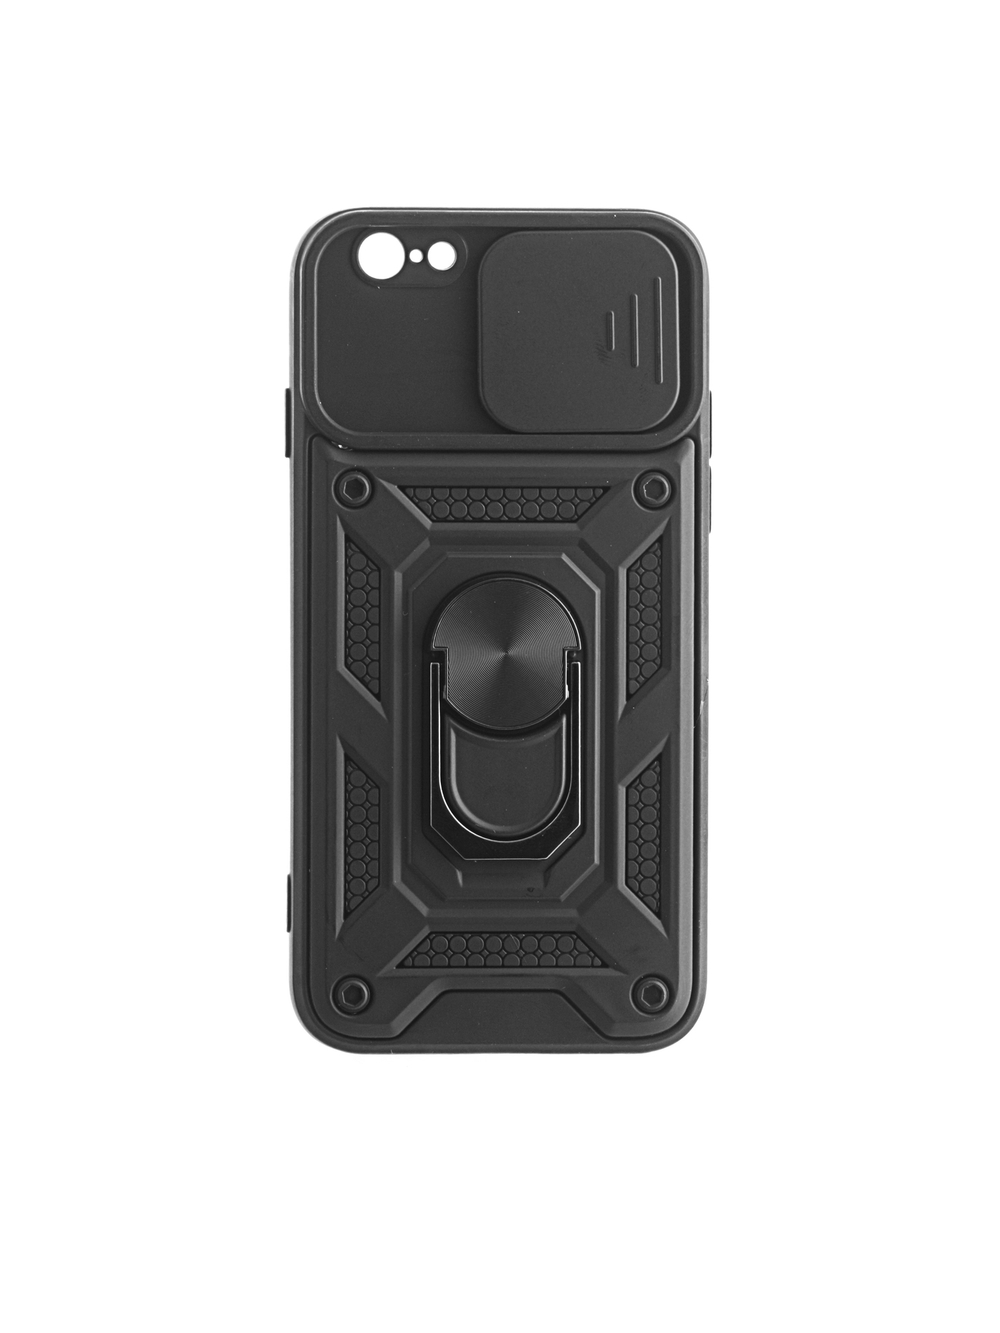 Чехол с кольцом Bumper Case для iPhone 6 / 6S